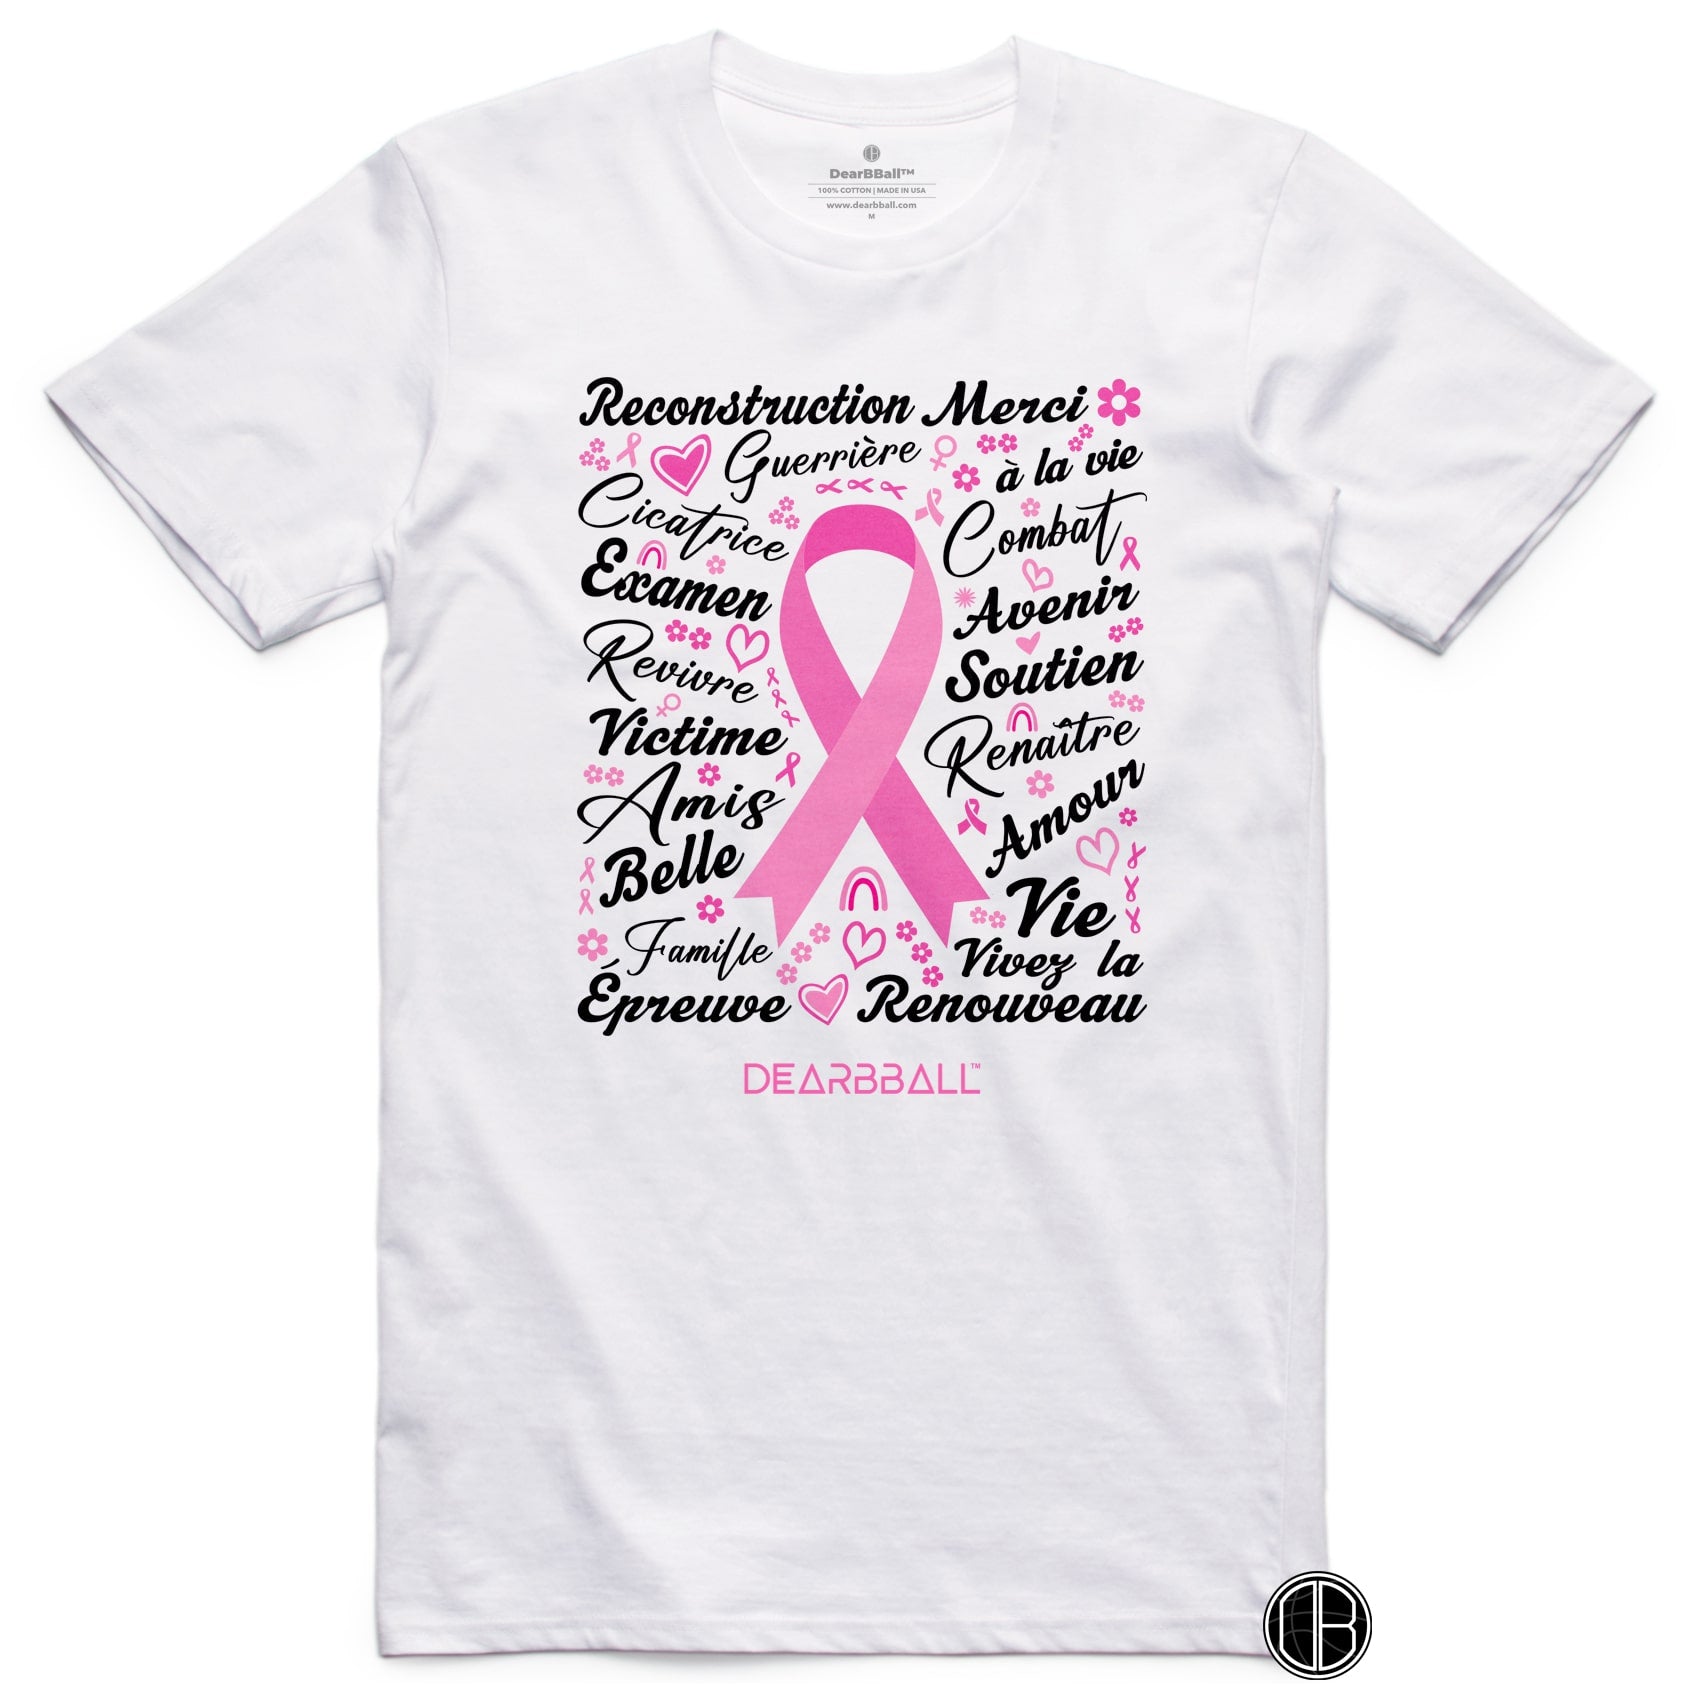 DearBBall T-Shirt - Pink October "Words Matter"